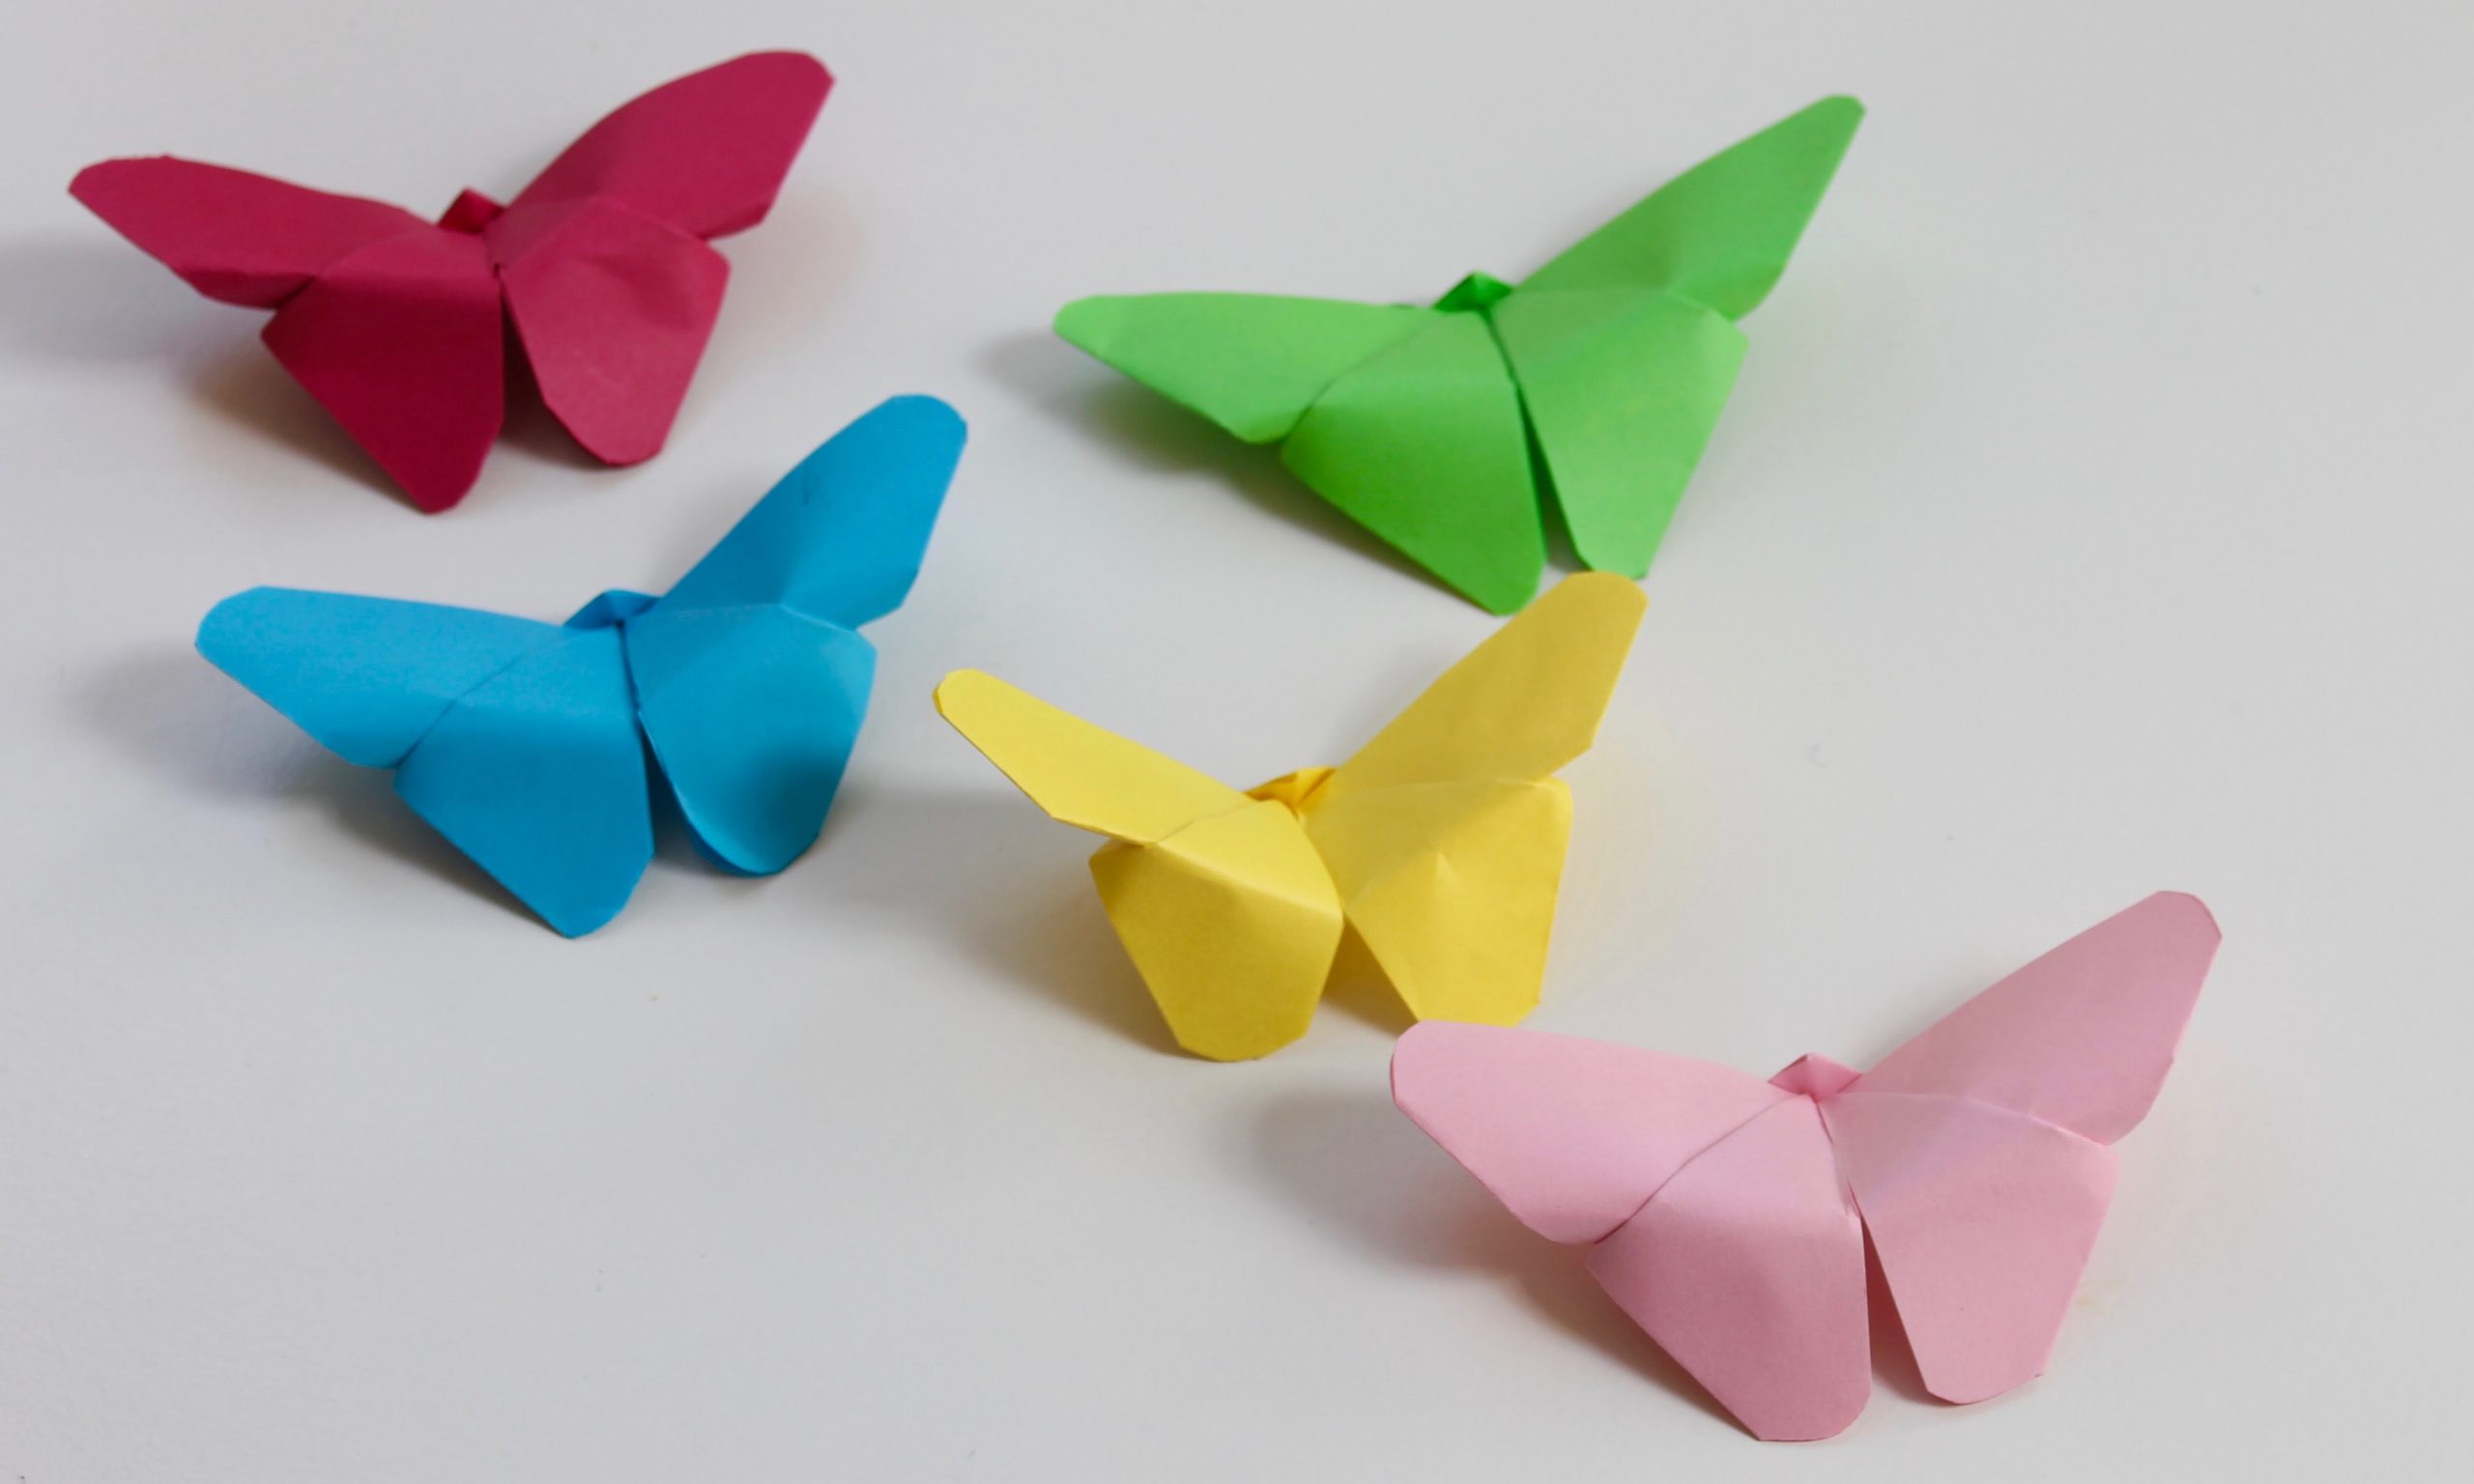 Bạn đã từng thử gấp origami con bướm chưa? Đây là một trò chơi tuyệt vời để giải trí và rèn luyện sự kiên trì và khéo léo của bạn. Con bướm được gấp từ những tờ giấy đơn giản, nhưng lại trở thành một tác phẩm nghệ thuật đầy màu sắc và sự hoàn hảo.